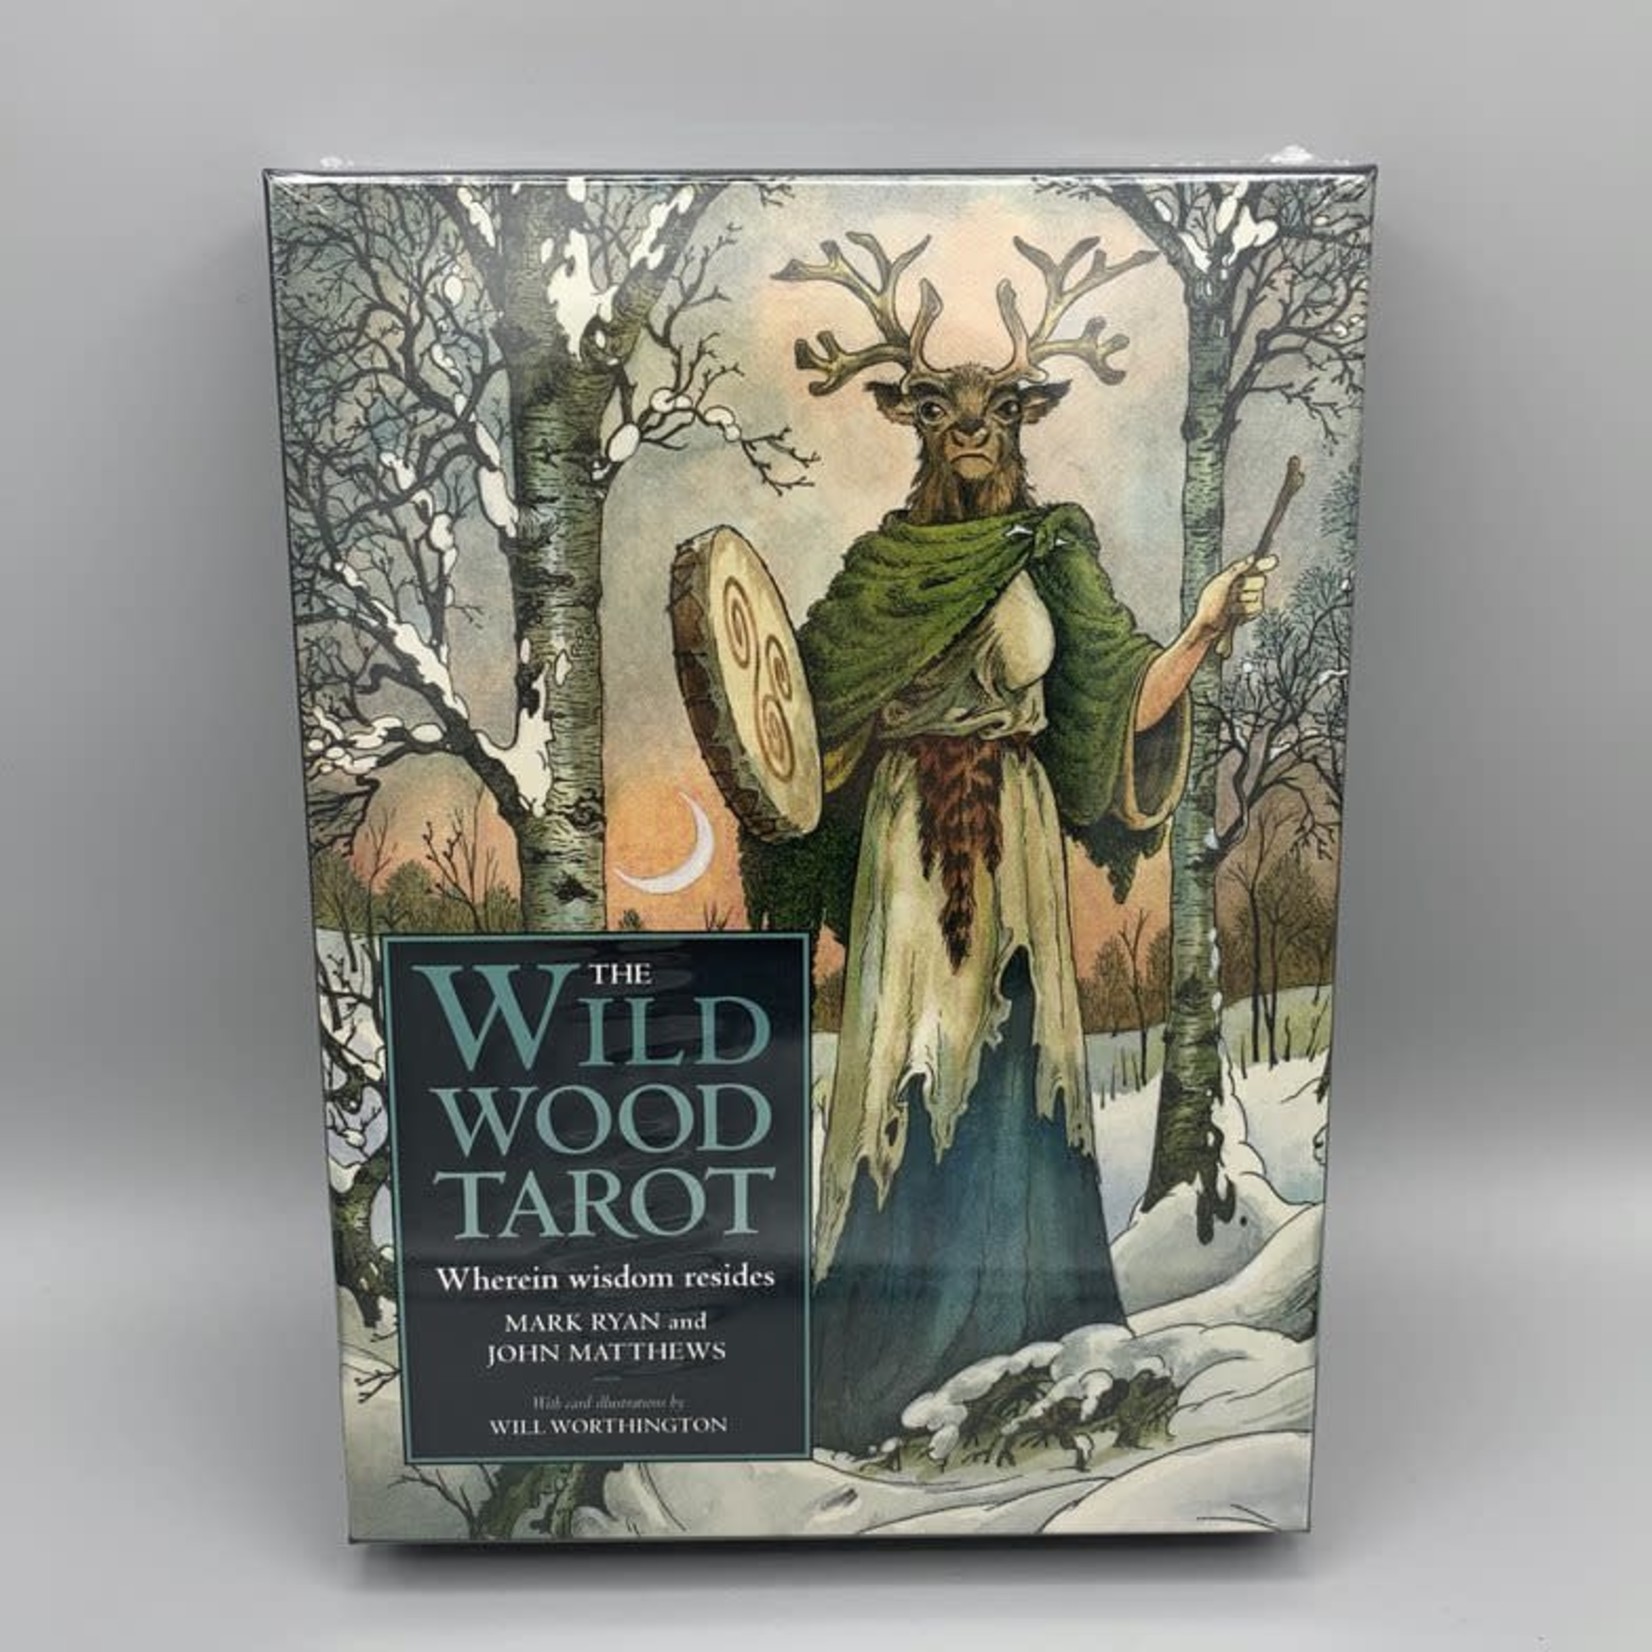 The Wild Wood Tarot by Mark Ryan, John Matthews, & Will Worthington